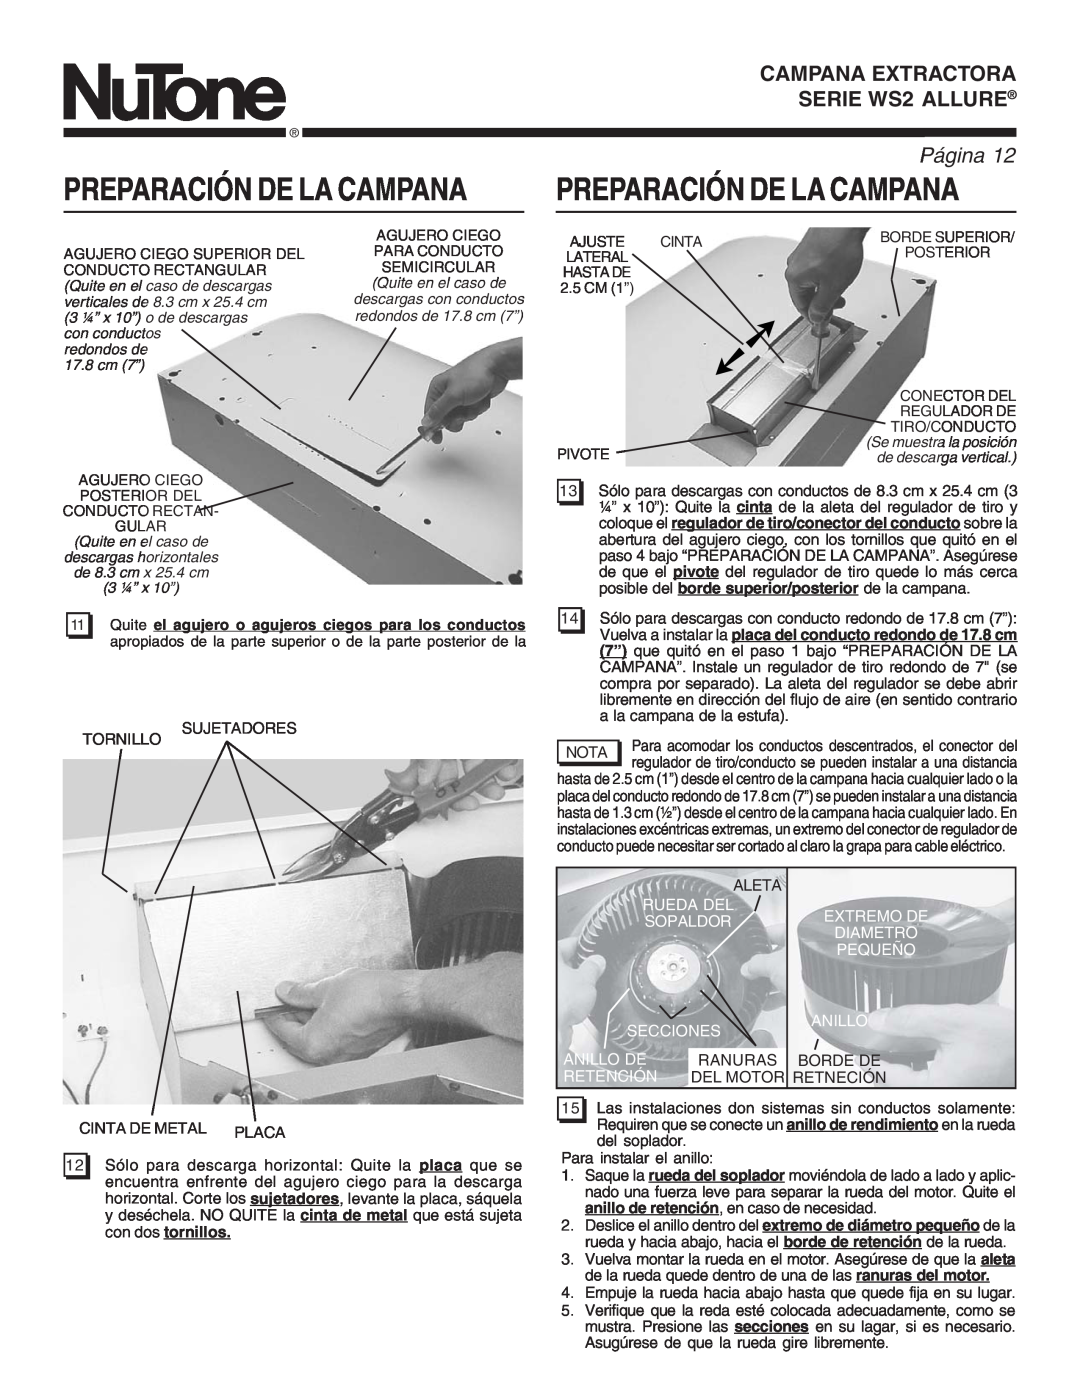 NuTone manual Preparación De La Campana, SERIE WS2RANGEALLUREHOOD, PáginaPage, Rueda Del Sopaldor Secciones, Anillo De 